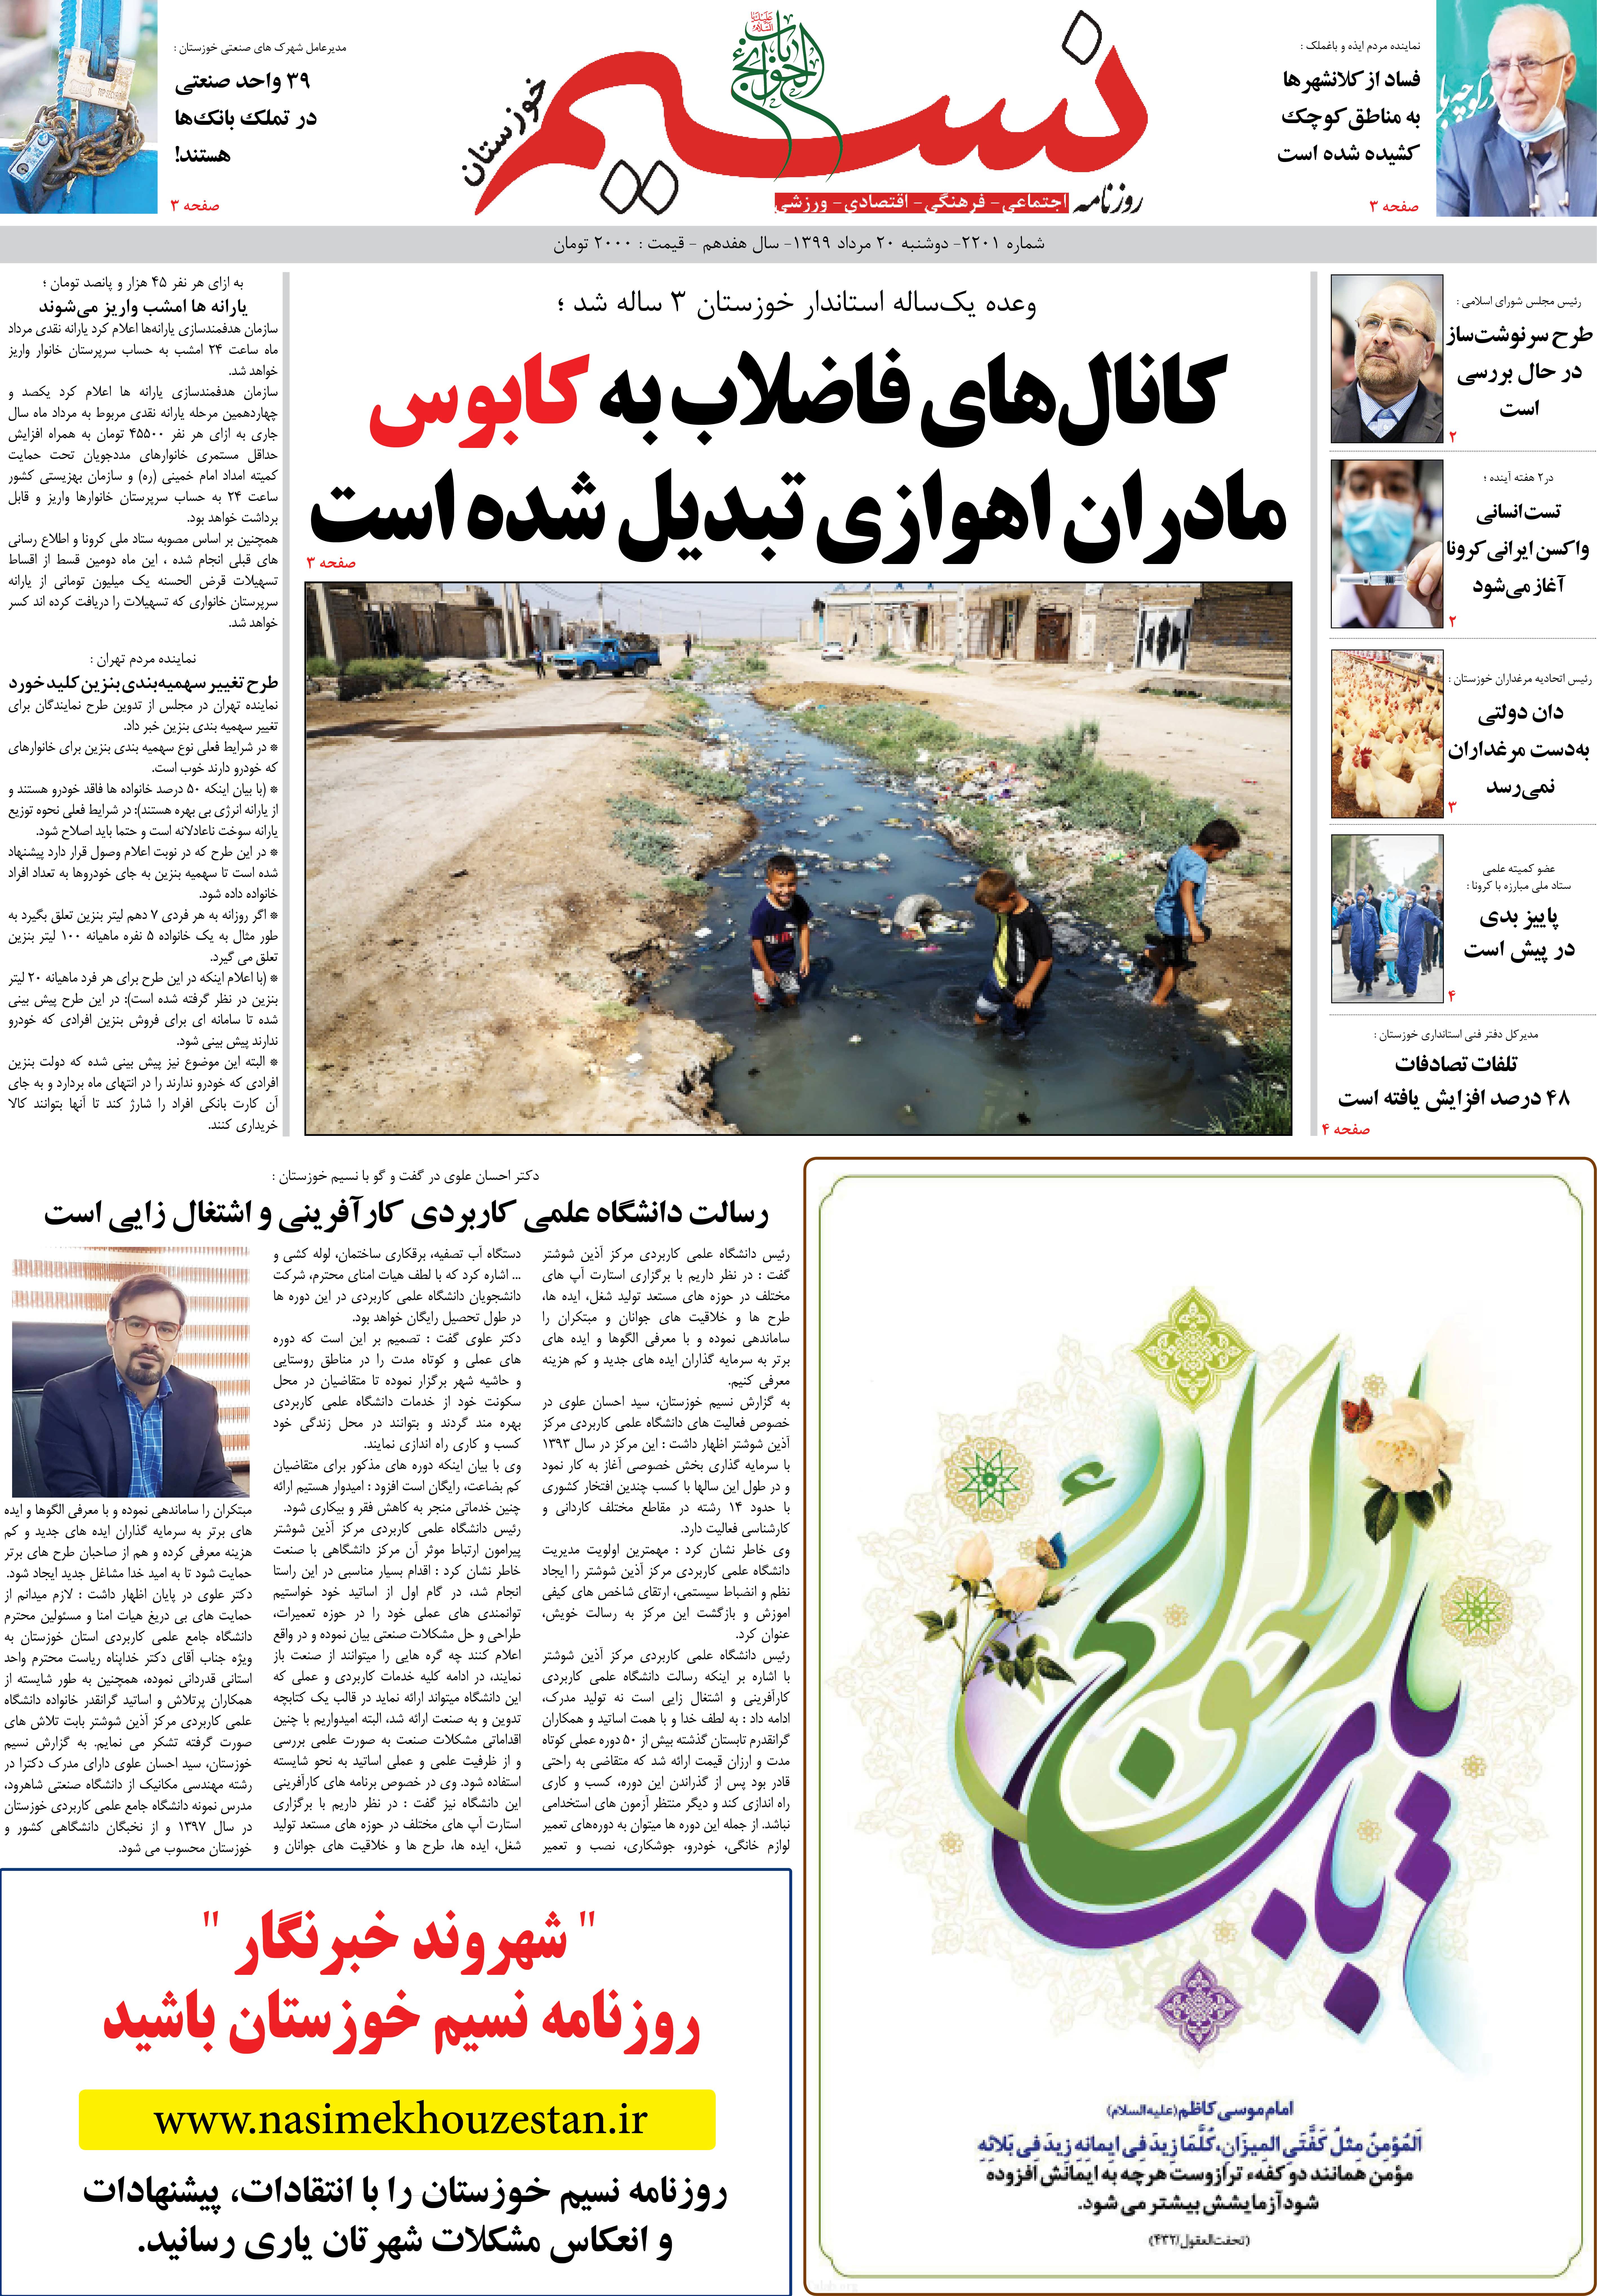 صفحه اصلی روزنامه نسیم شماره 2201 